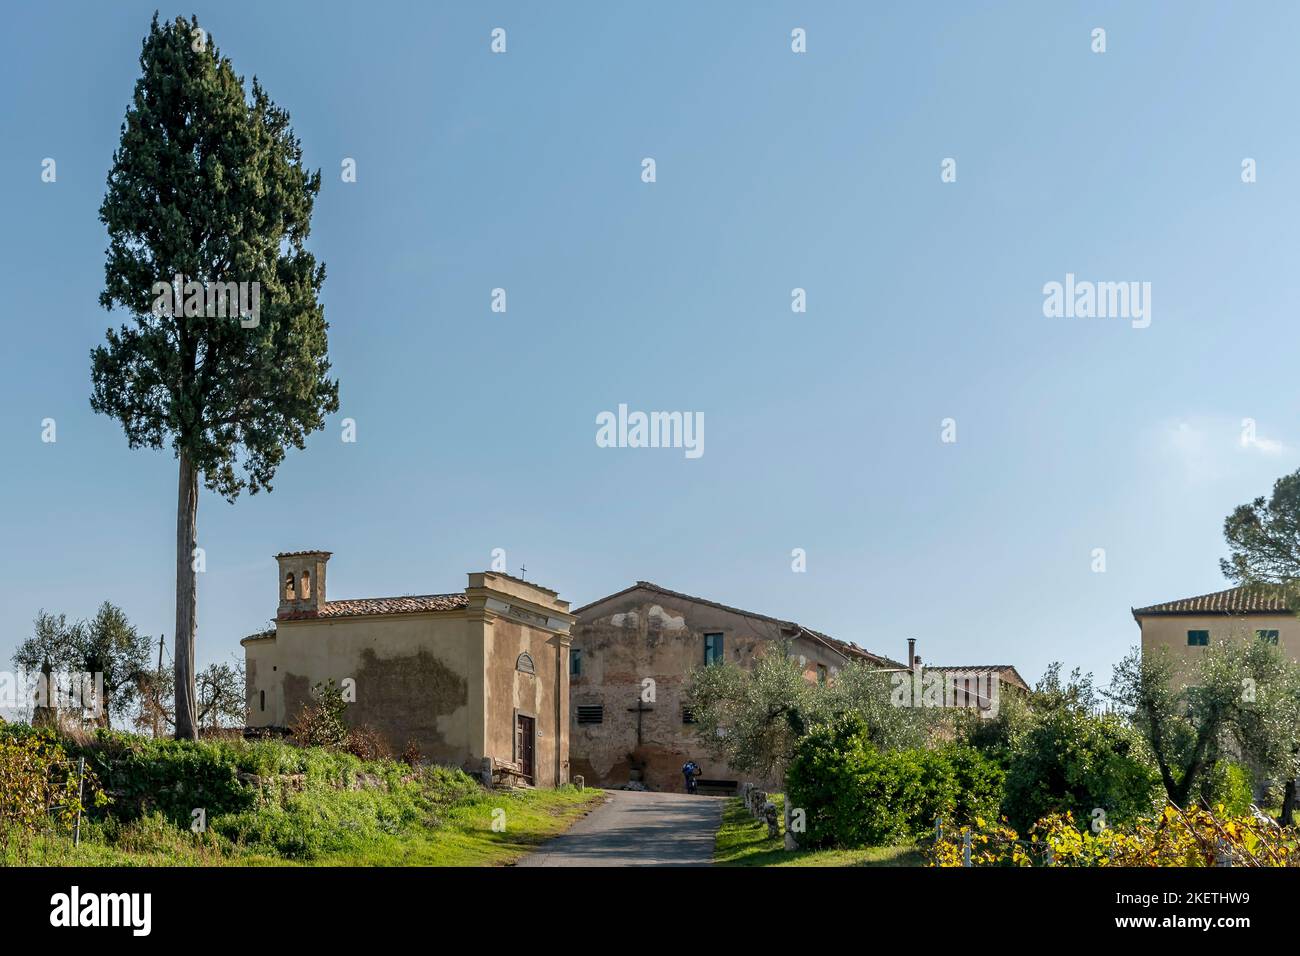 The ancient church of Fichino, Casciana Terme, Pisa Italy Stock Photo